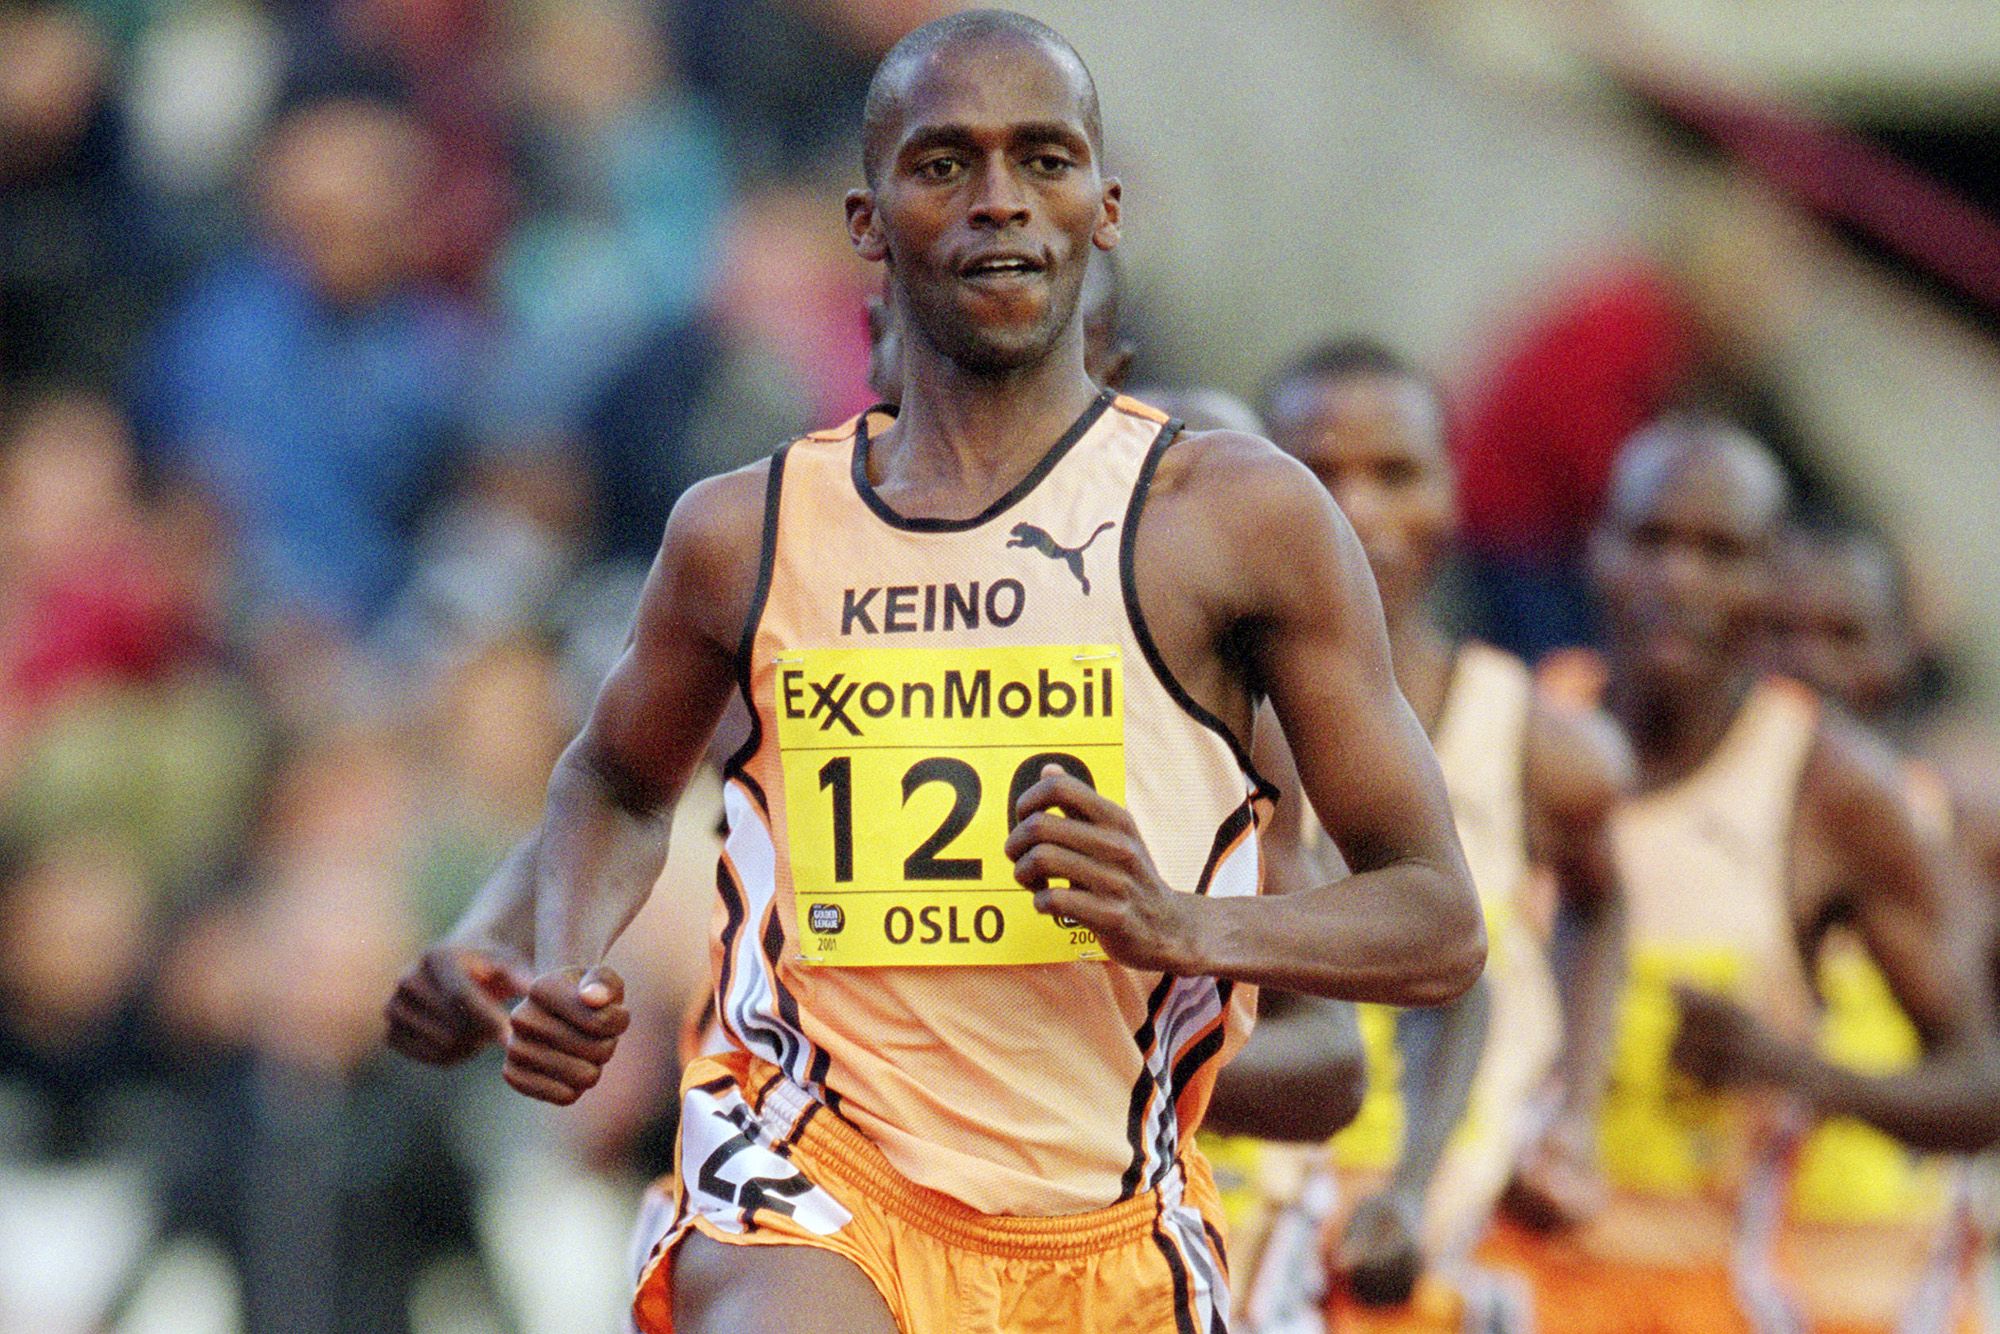 Kenyan middle-distance runner Martin Keino